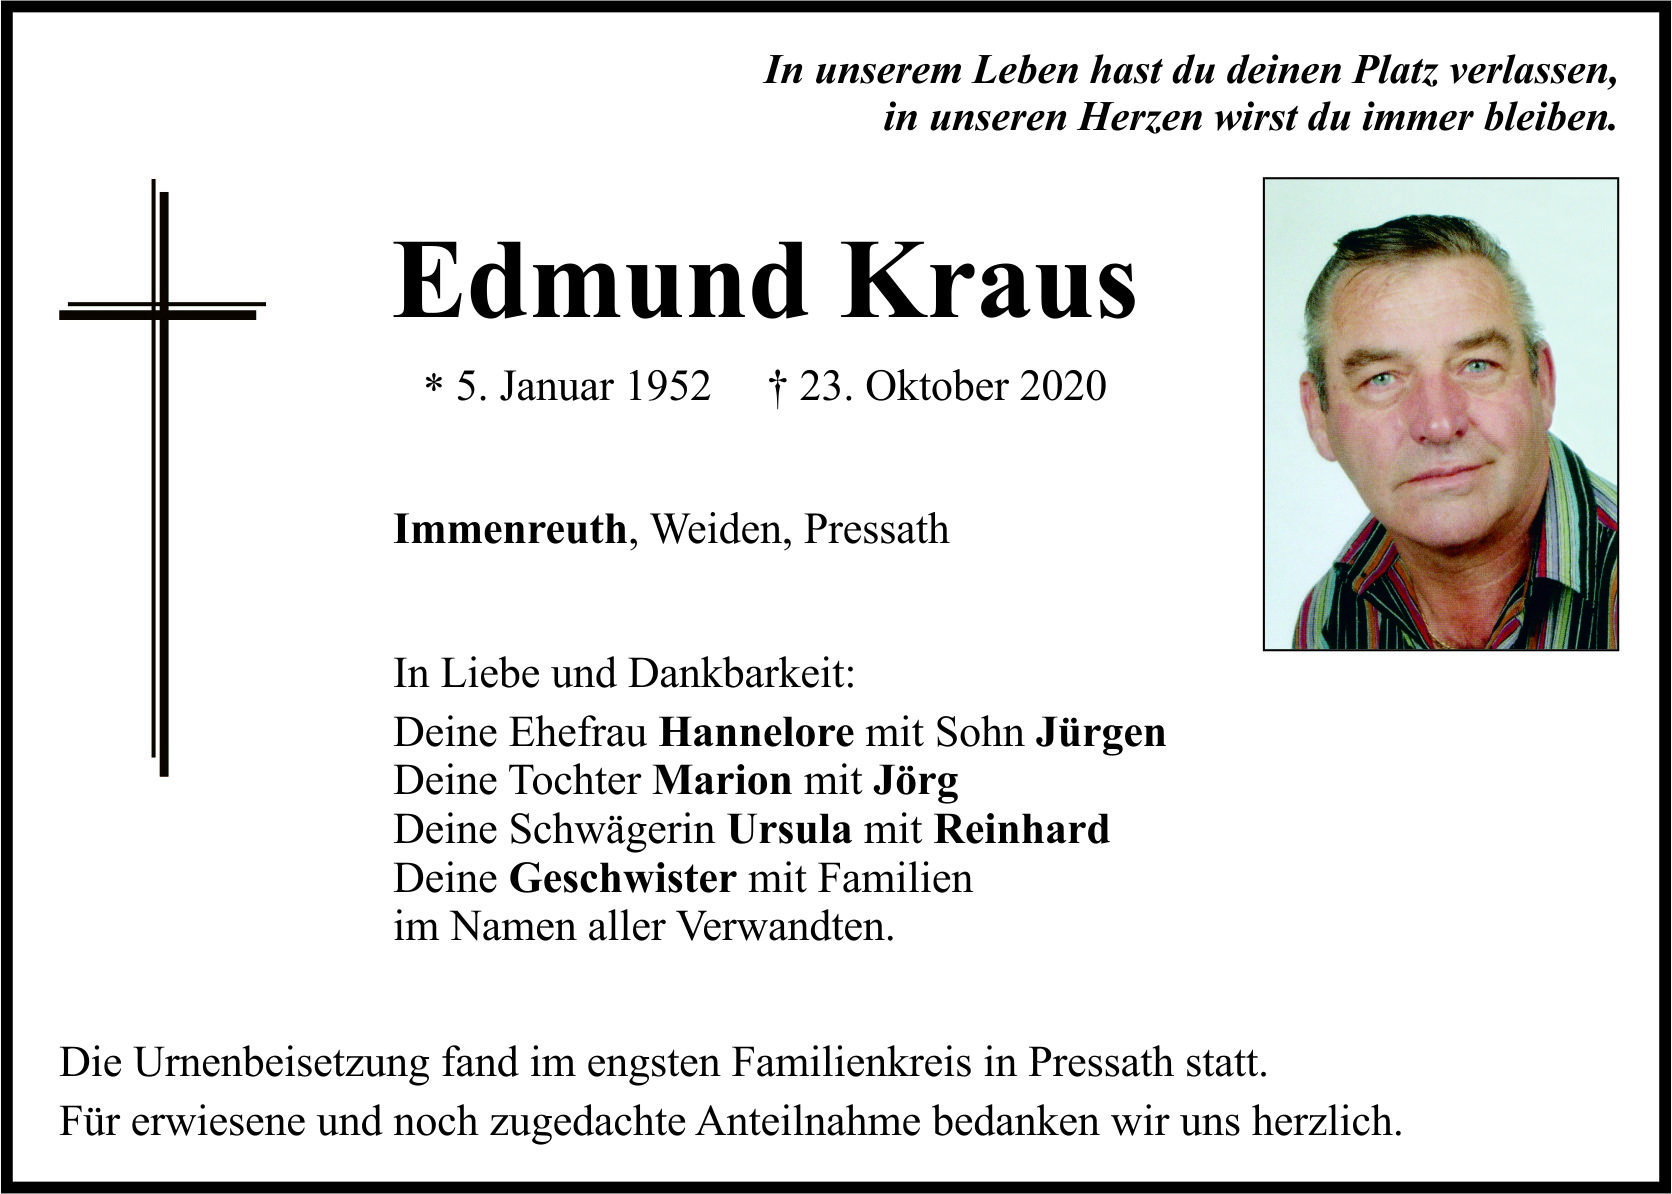 Traueranzeige Edmund Kraus, Immenreuth